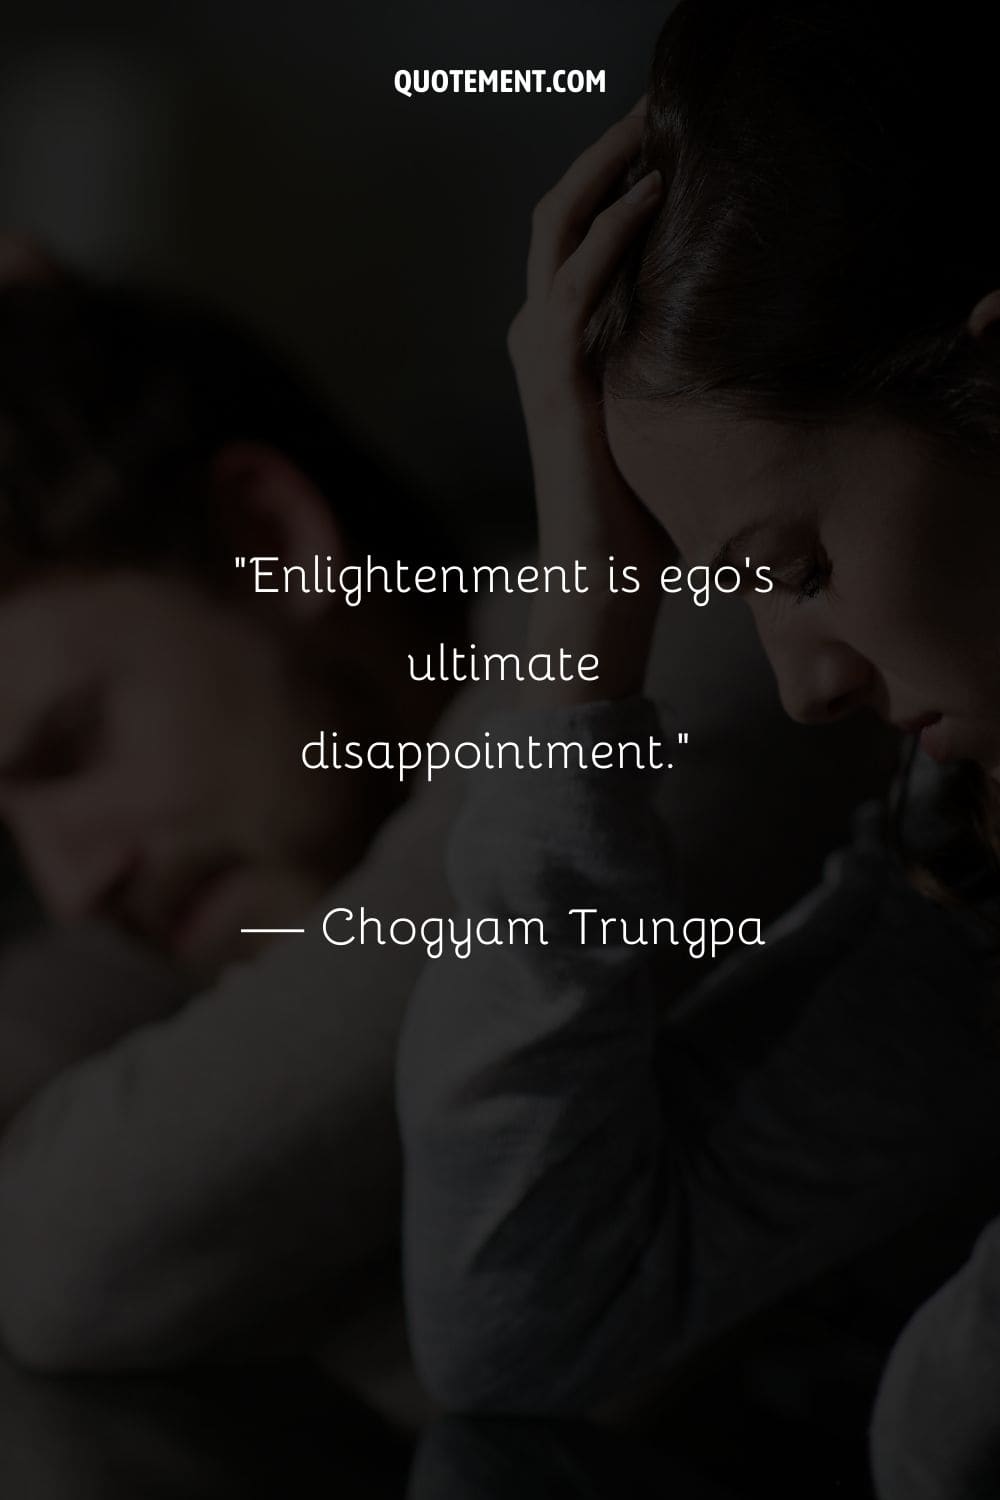 La iluminación es la última decepción del ego